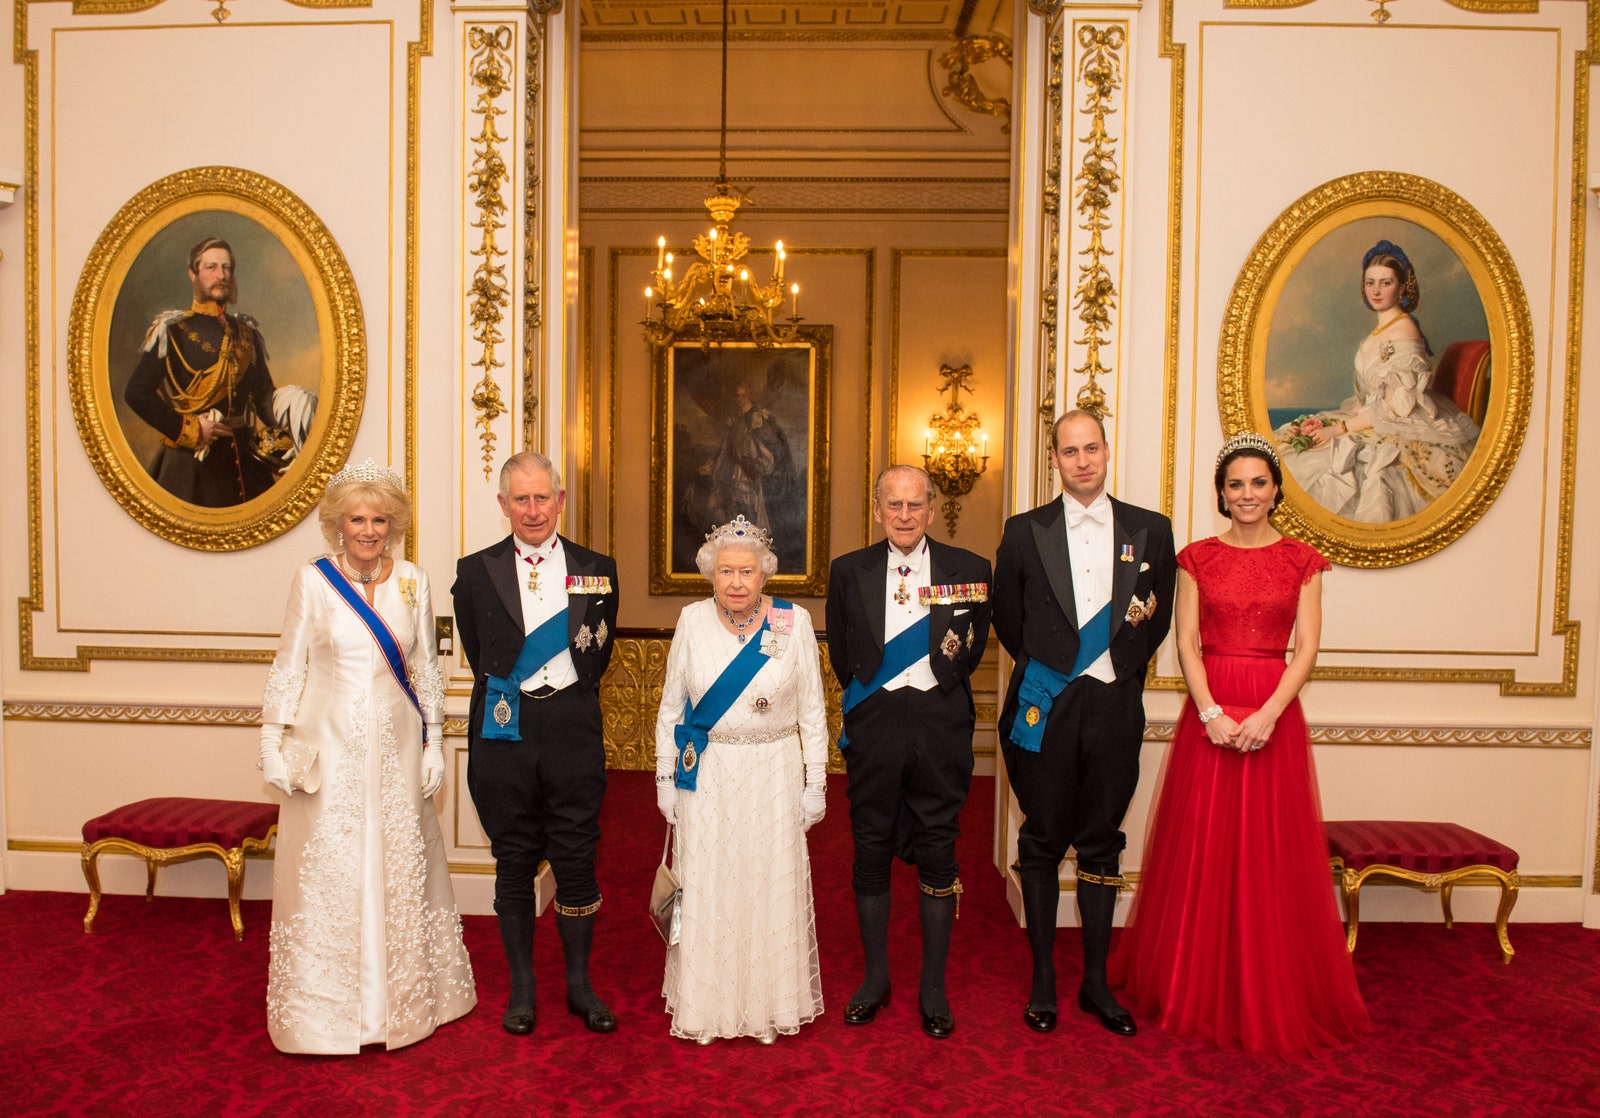 Камилла ПаркерБоулз принц Чарльз Елизавета II принц Филип принц Уильям и Кейт Миддлтон в Букингемском дворце